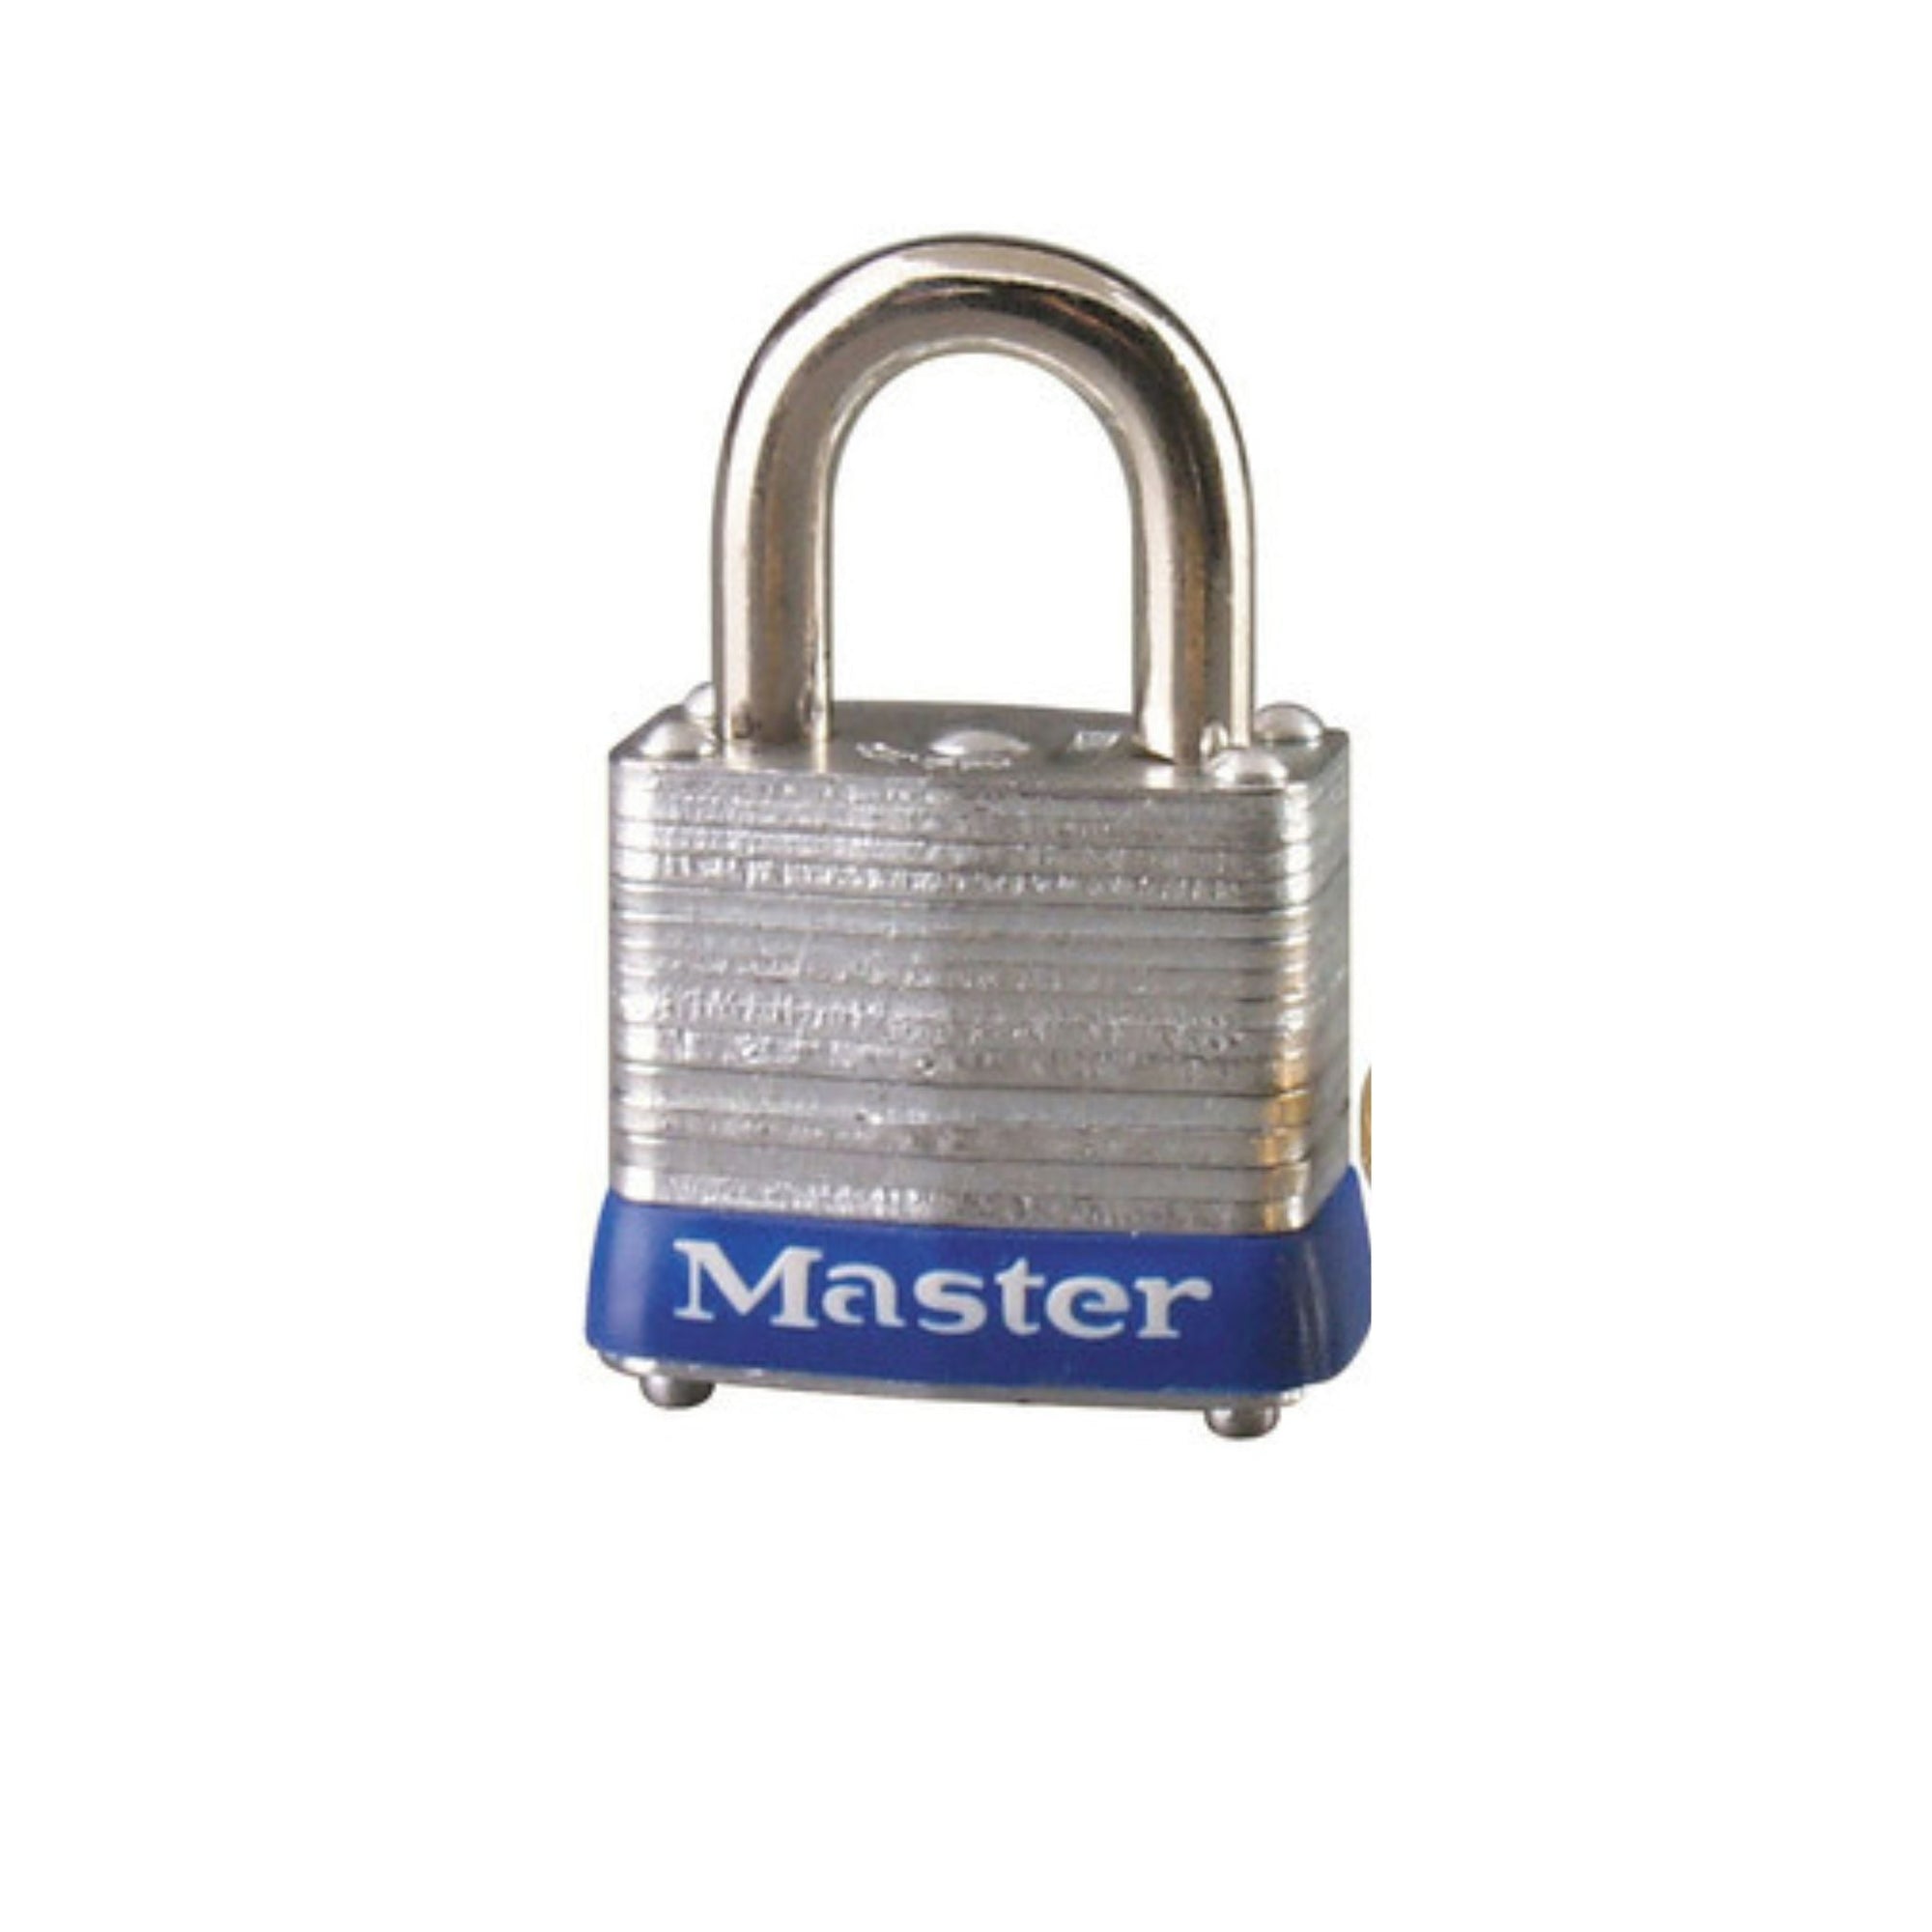 Master Lock 7KA P122 Lock Laminated steel No. 7 Series Padlock Keyed to Match Existing Key Number KAP122 - The Lock Source